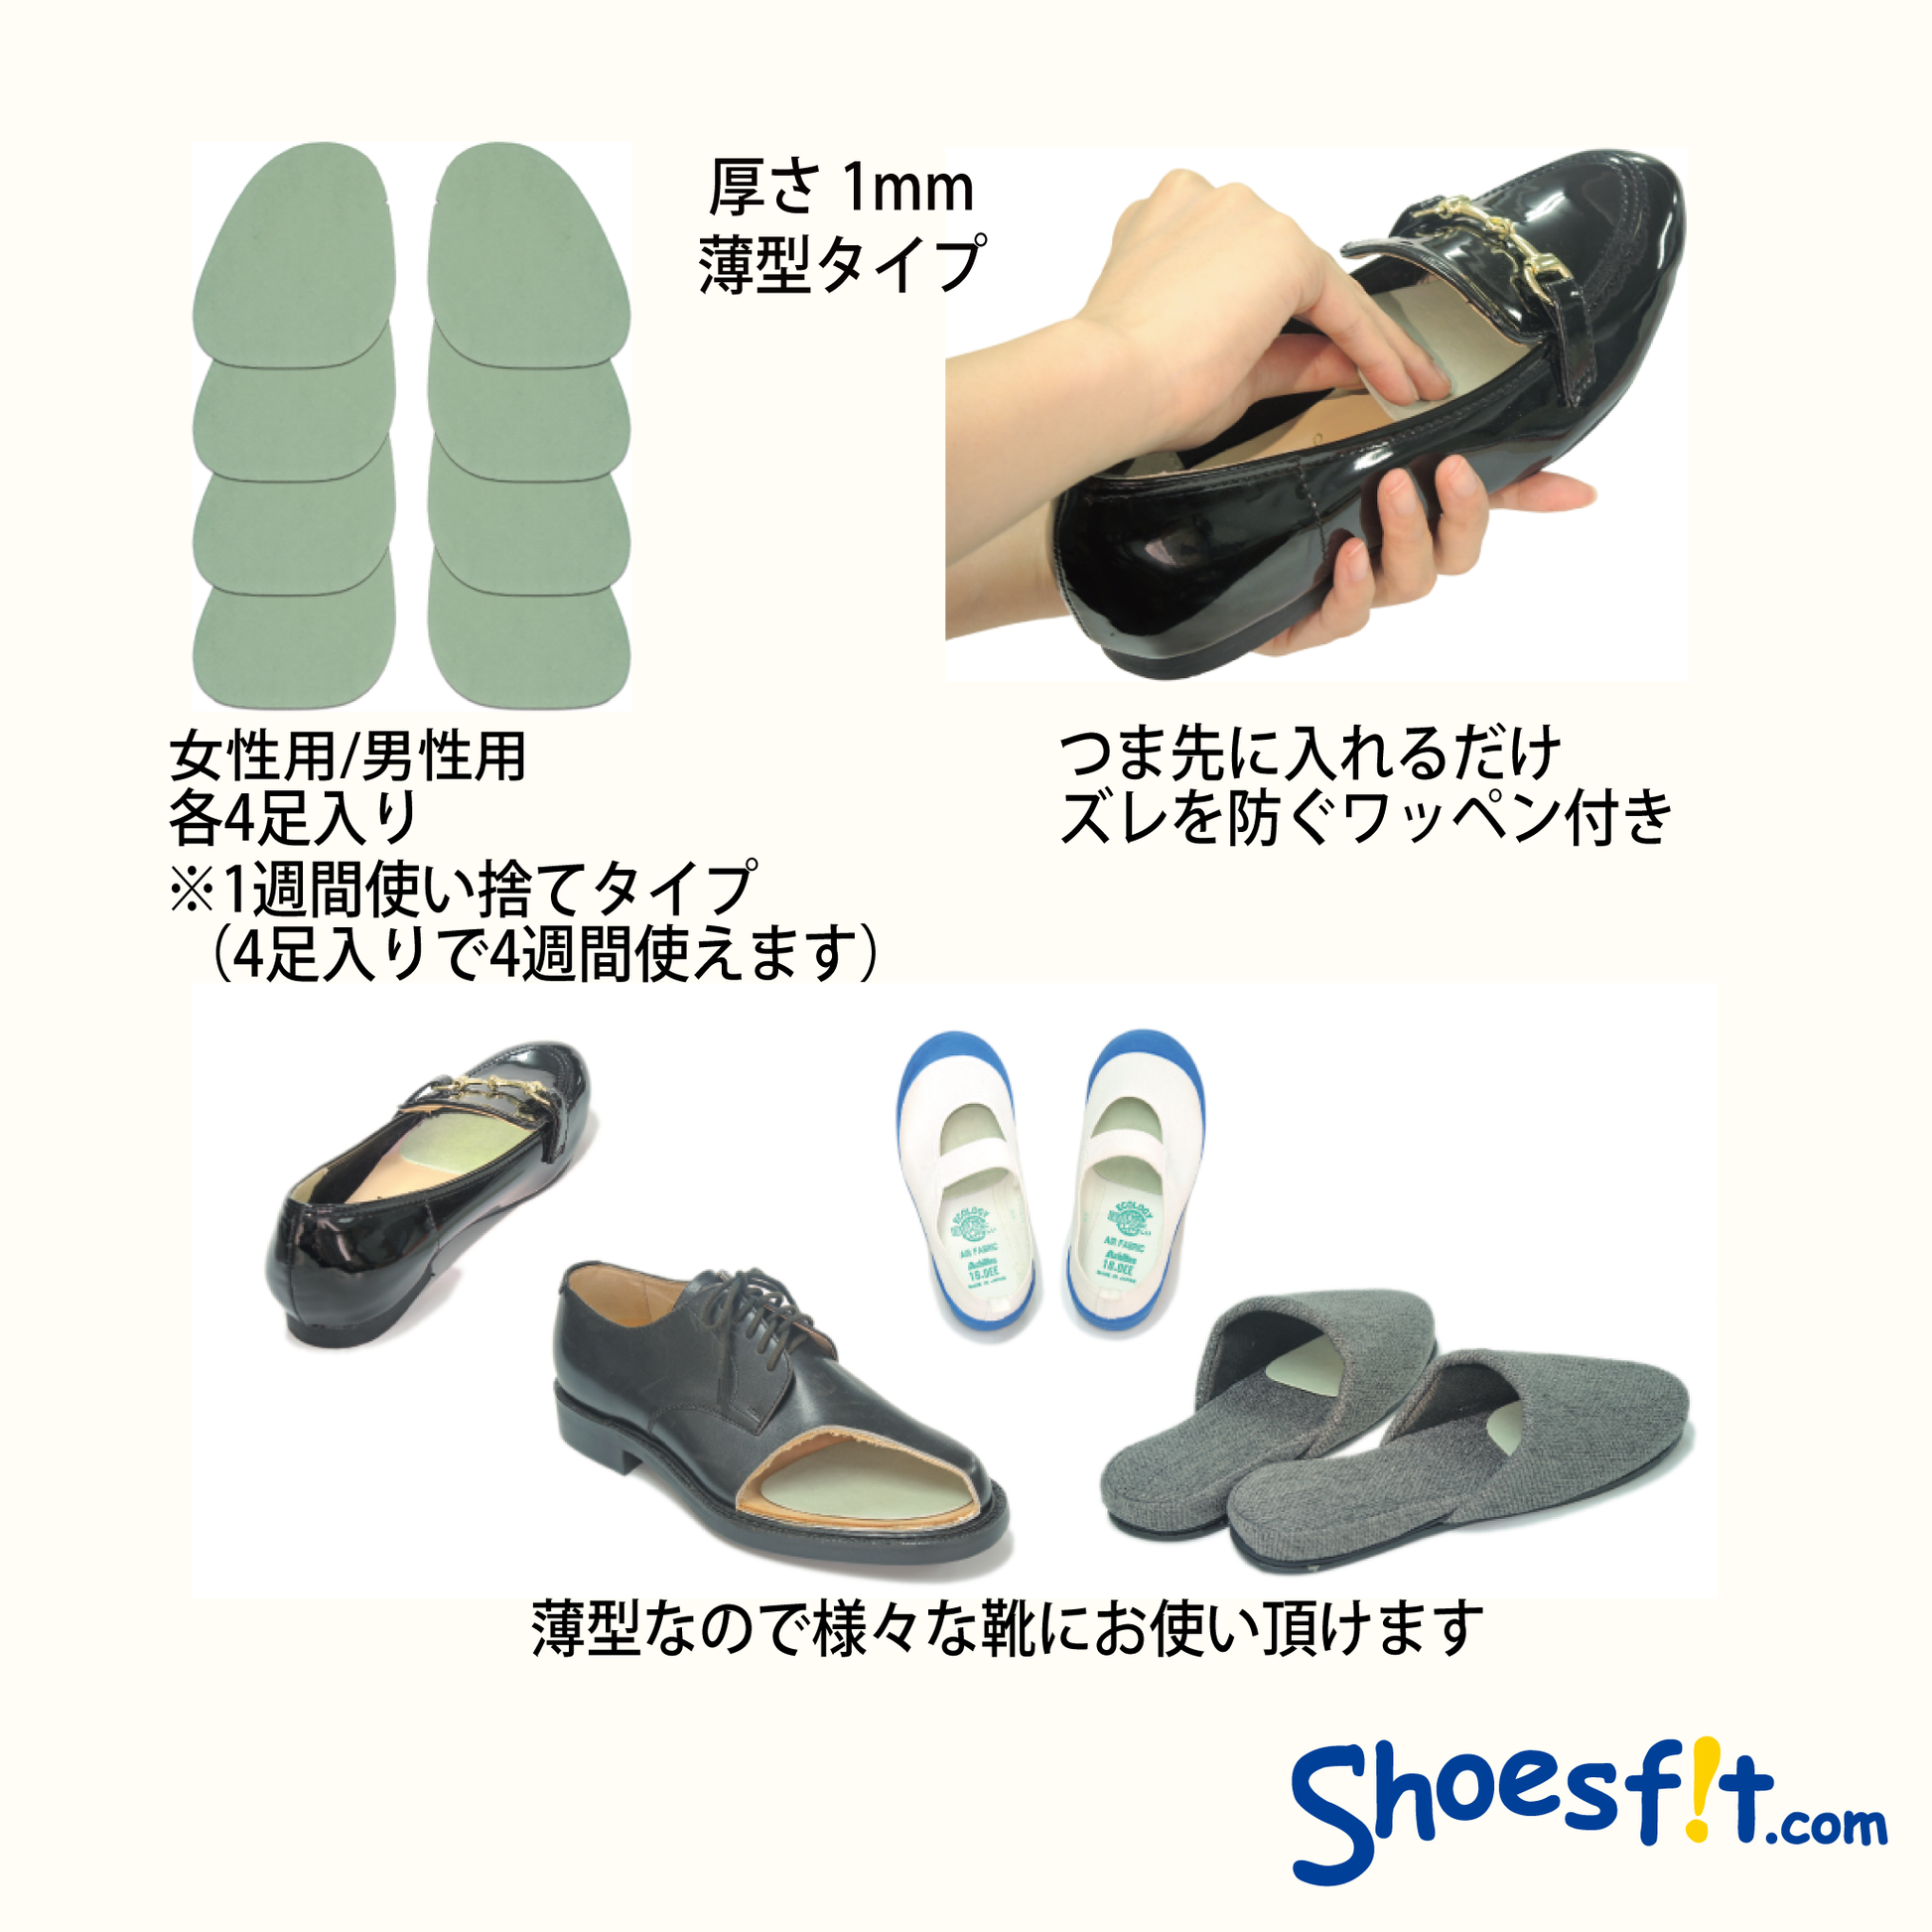 アロマインソール つま先シート(4足入) 女性用 – Shoesfit